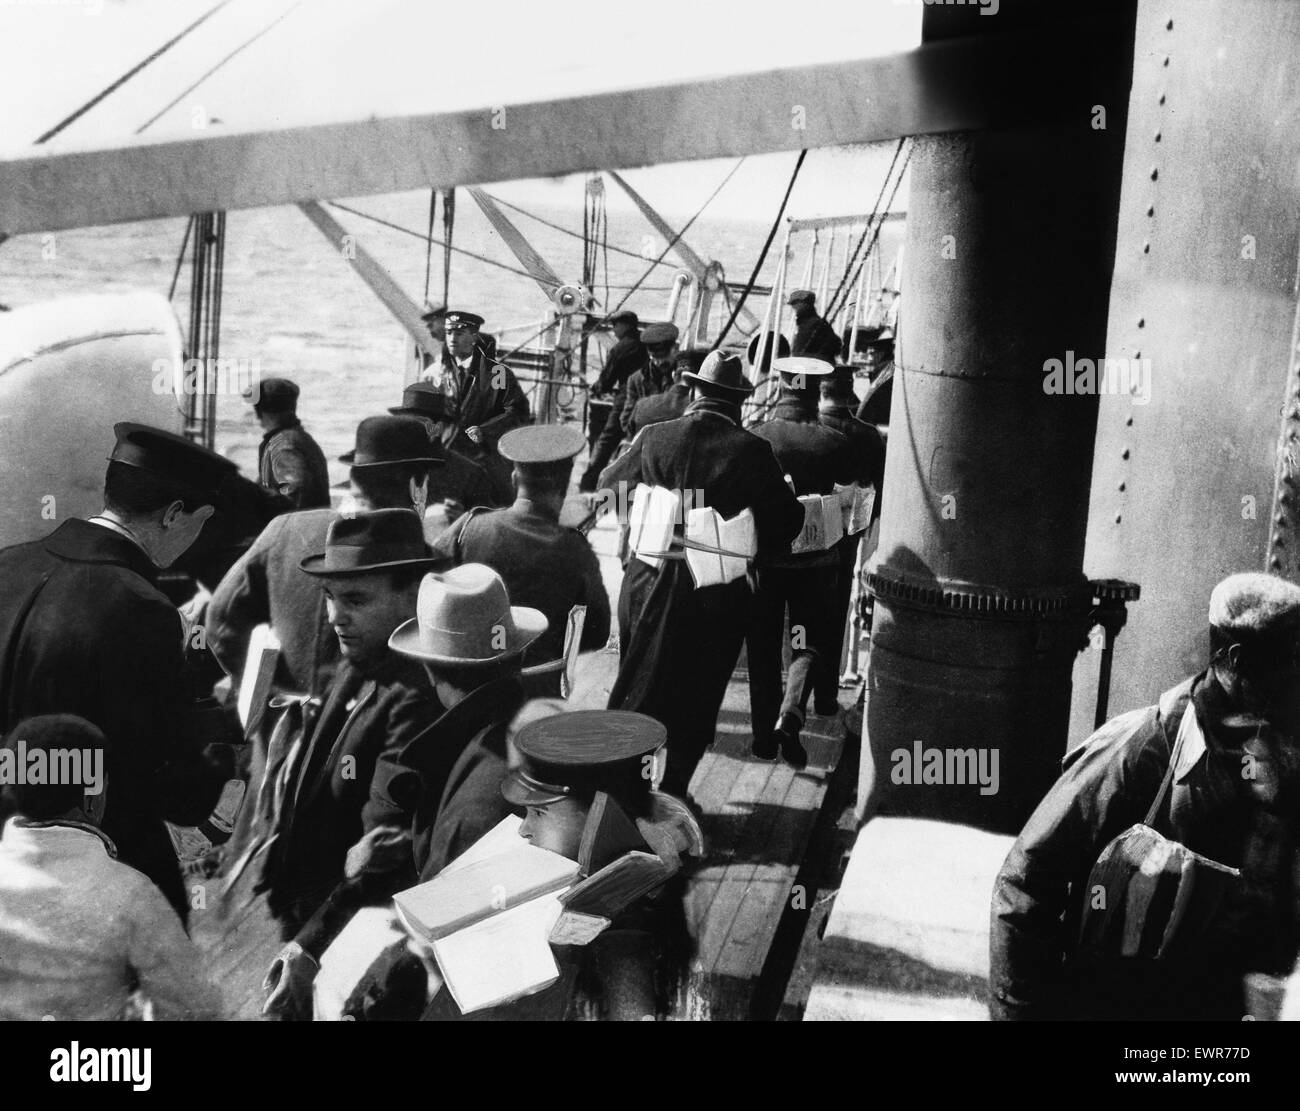 Untergang des Schiffes Falaba DM 3141d Box 5 28. März 1915. Der Untergang der "Falaba". Passagiere an Bord der betroffene Liner suchen Sie nach verfügbaren Rettungsboote. Die britischen Liner "Falaba" wurde durch ein deutsches u-Boot in den Gewässern um Großbritannien, torpediert ein Eva Stockfoto